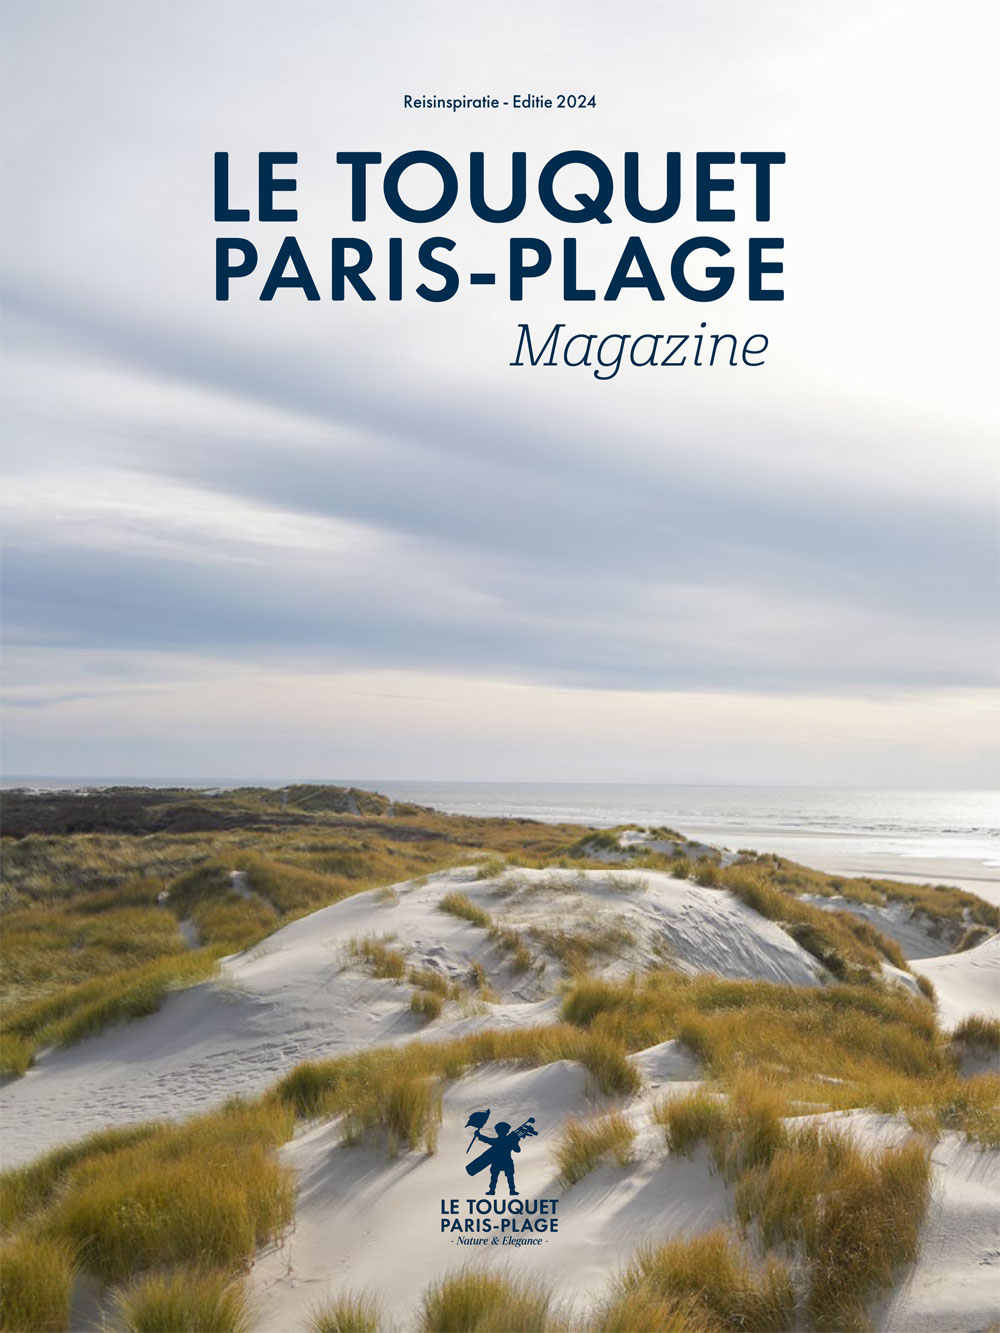 Le Touquet-Paris-Plage magazine<br>EN & NL